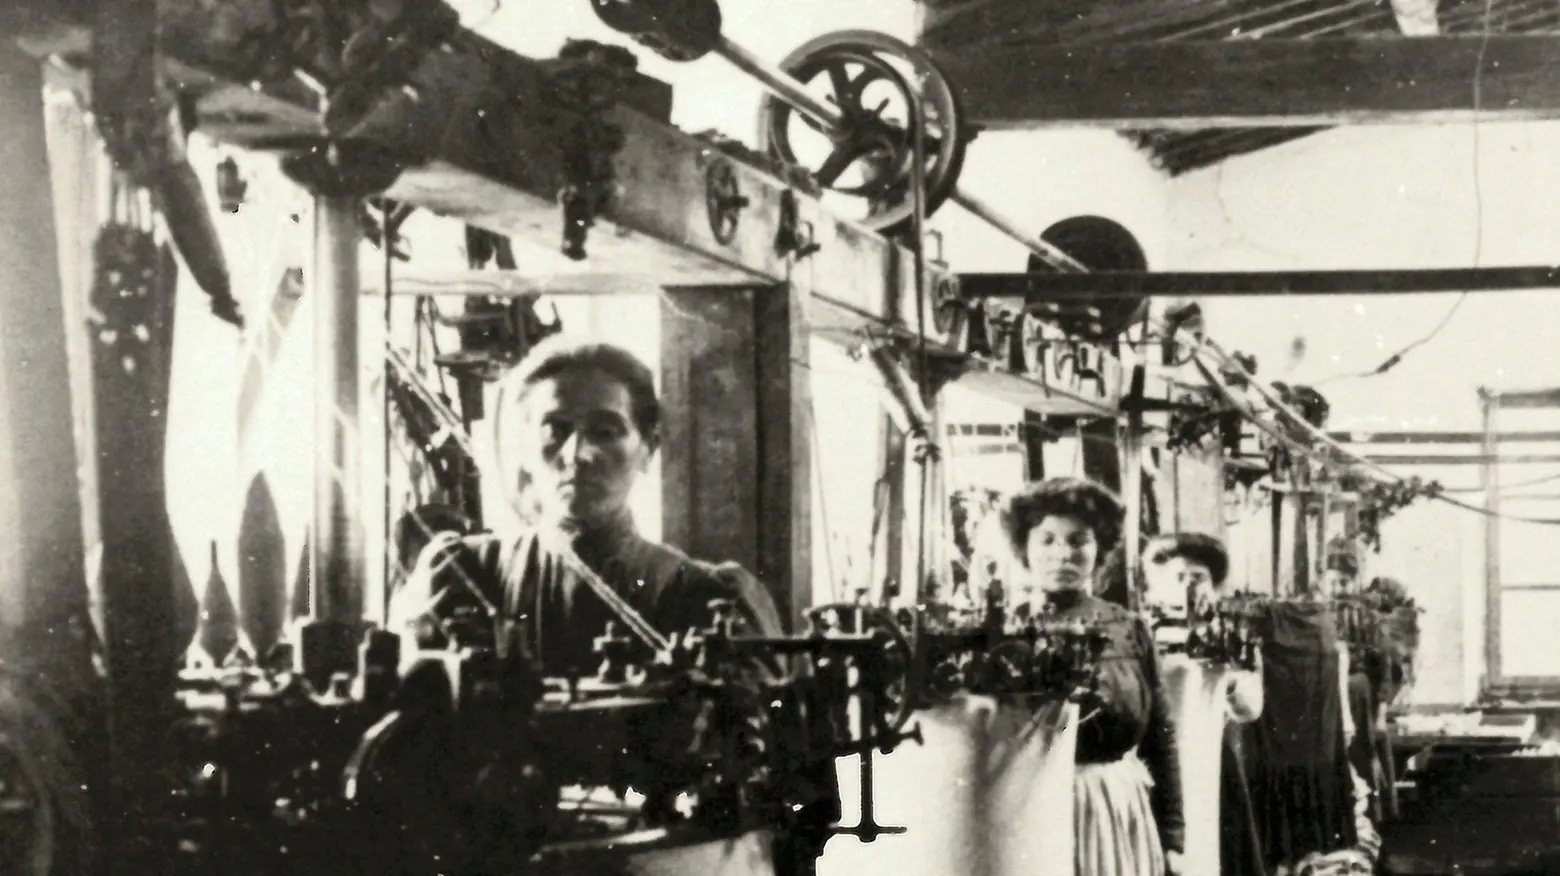 Memorie del tessile  Lazzerini cerca foto  di vecchie fabbriche